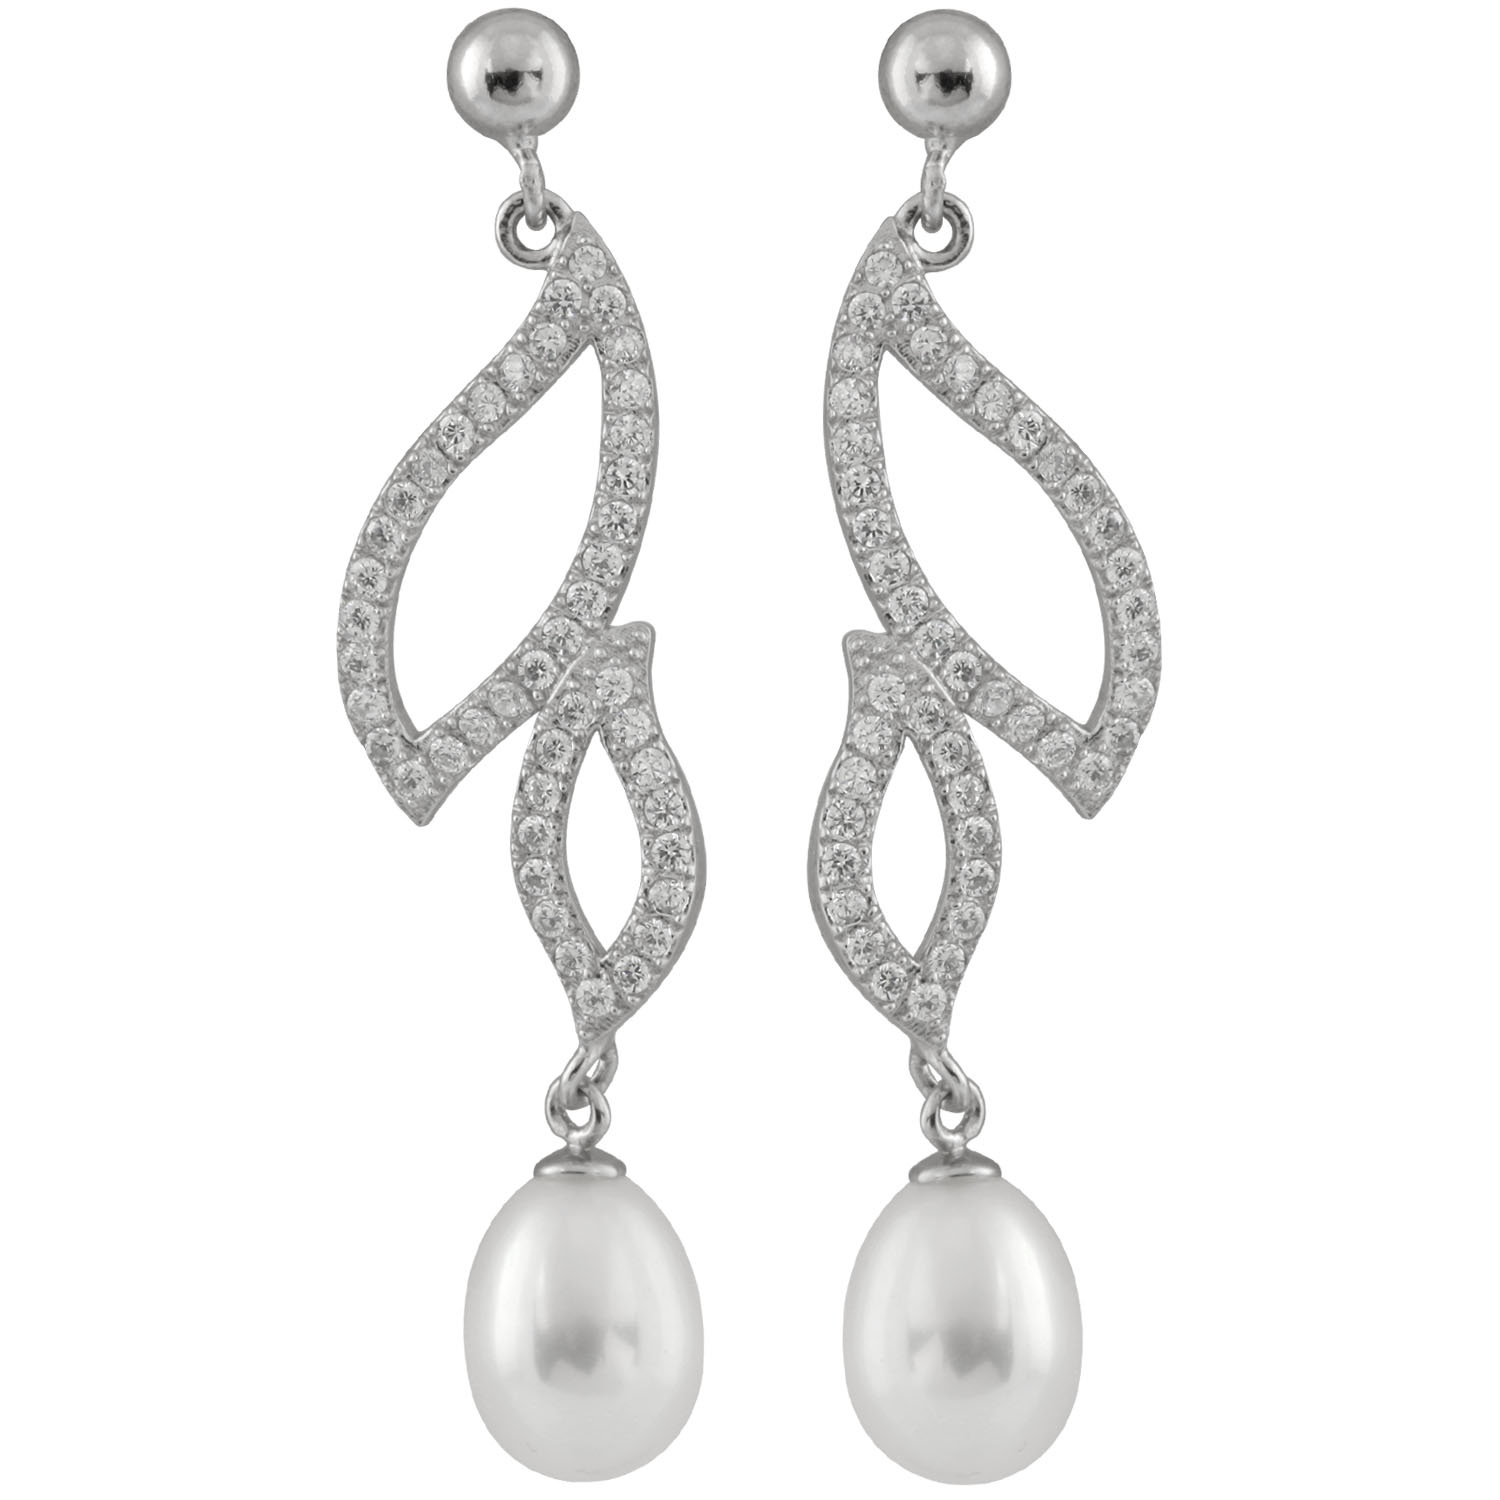 New Sterling Silver earrings